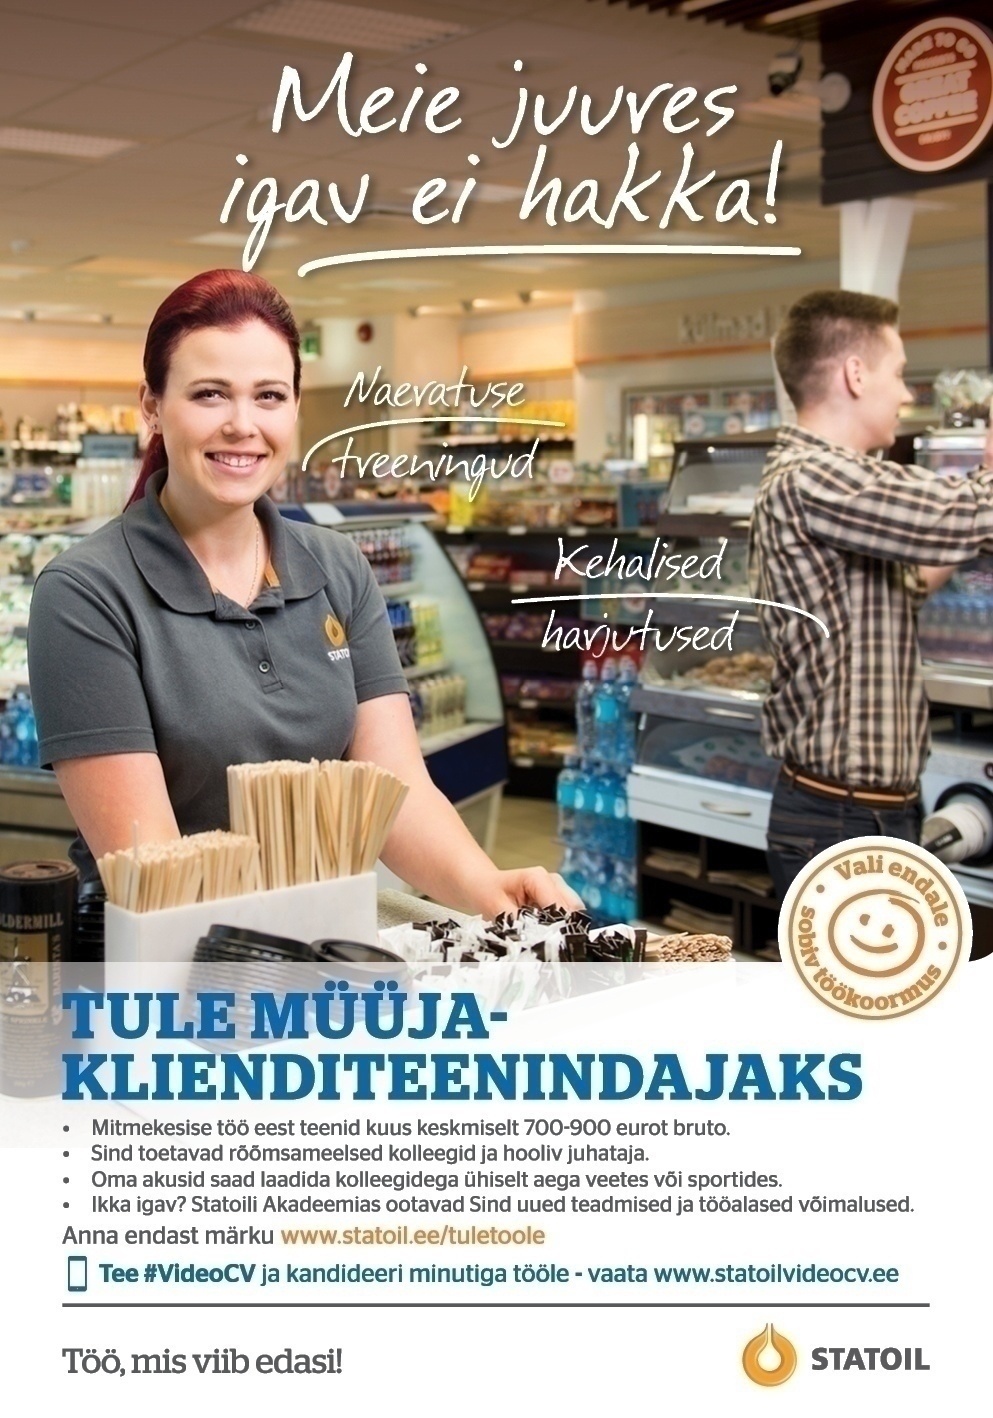 Circle K Eesti AS Müüja-klienditeenindaja Viljandi Endla teenindusjaama